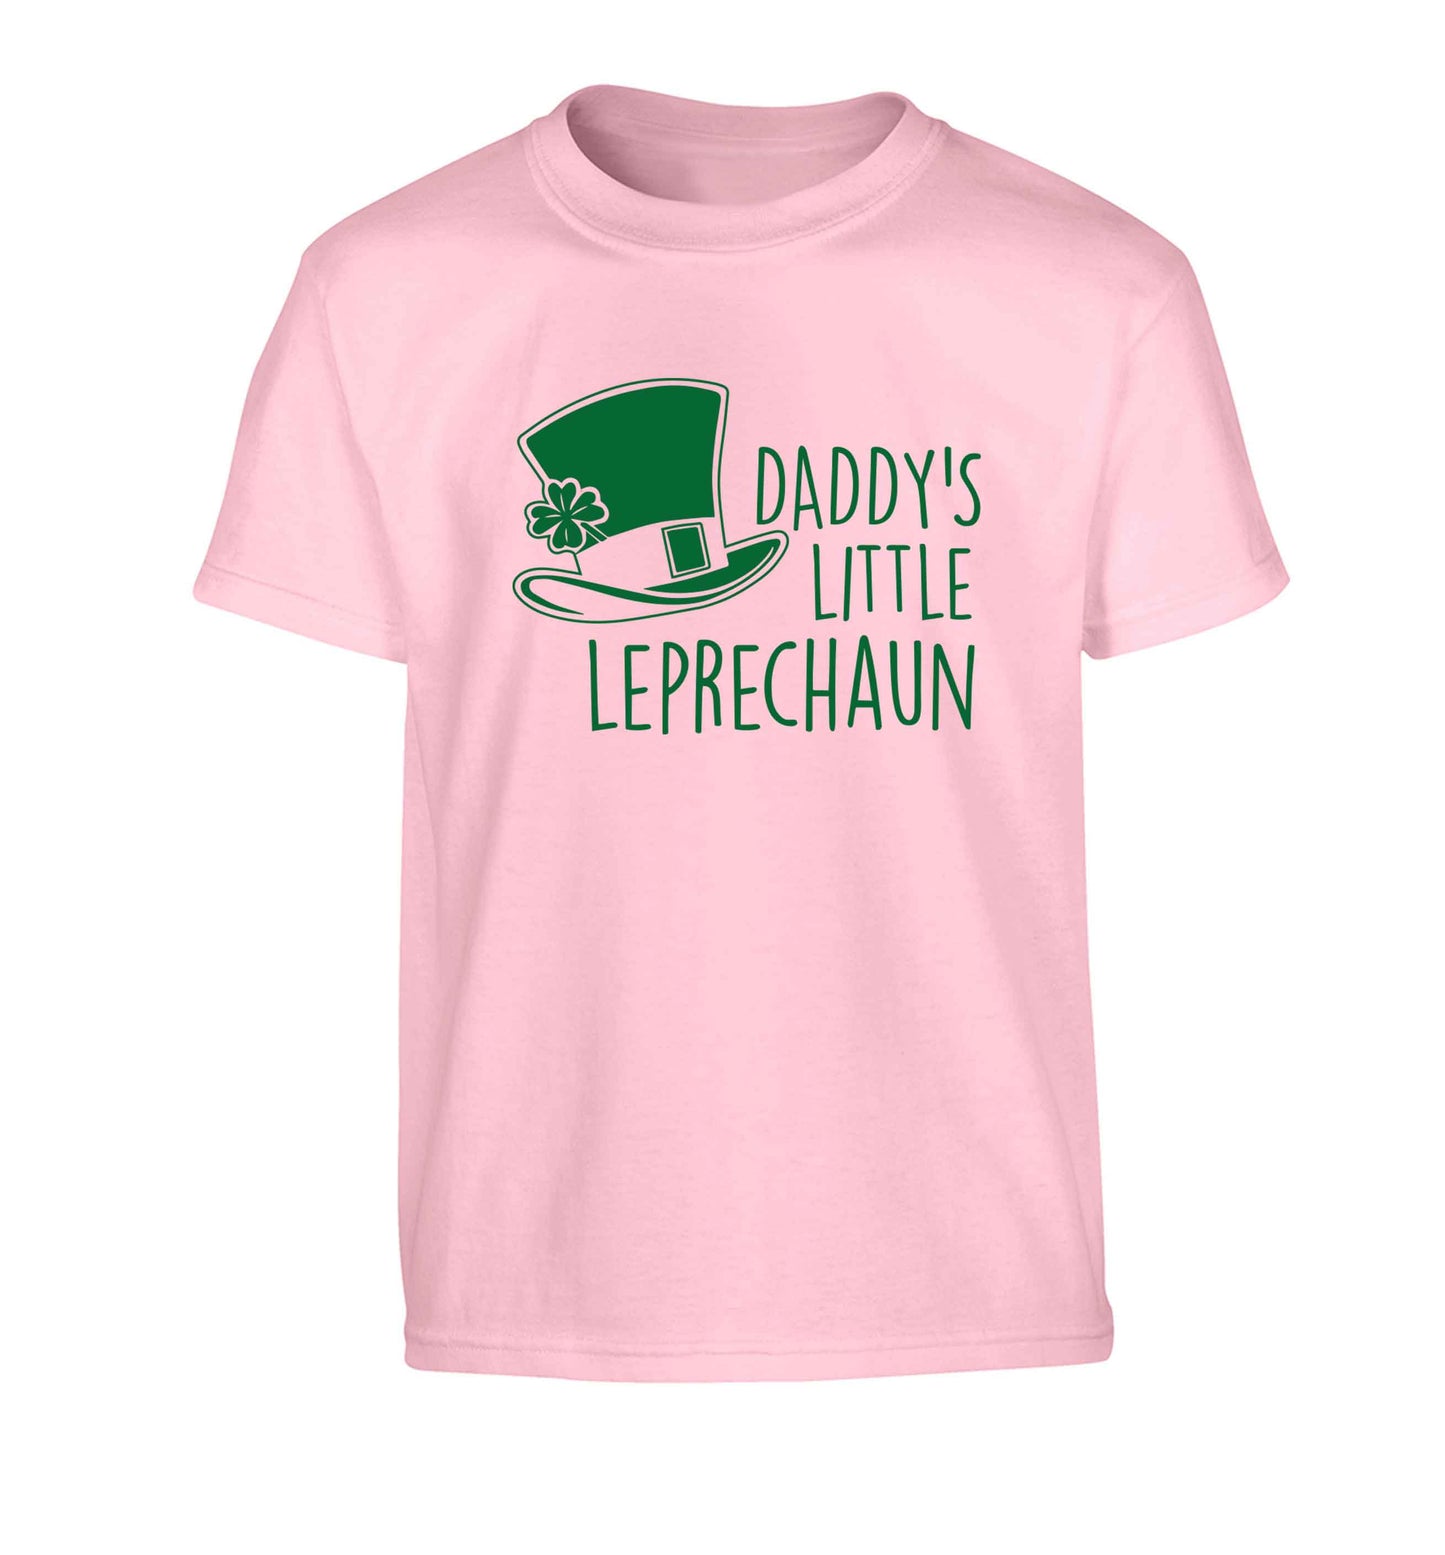 Daddy's little leprechaun Children's light pink Tshirt 12-13 Years